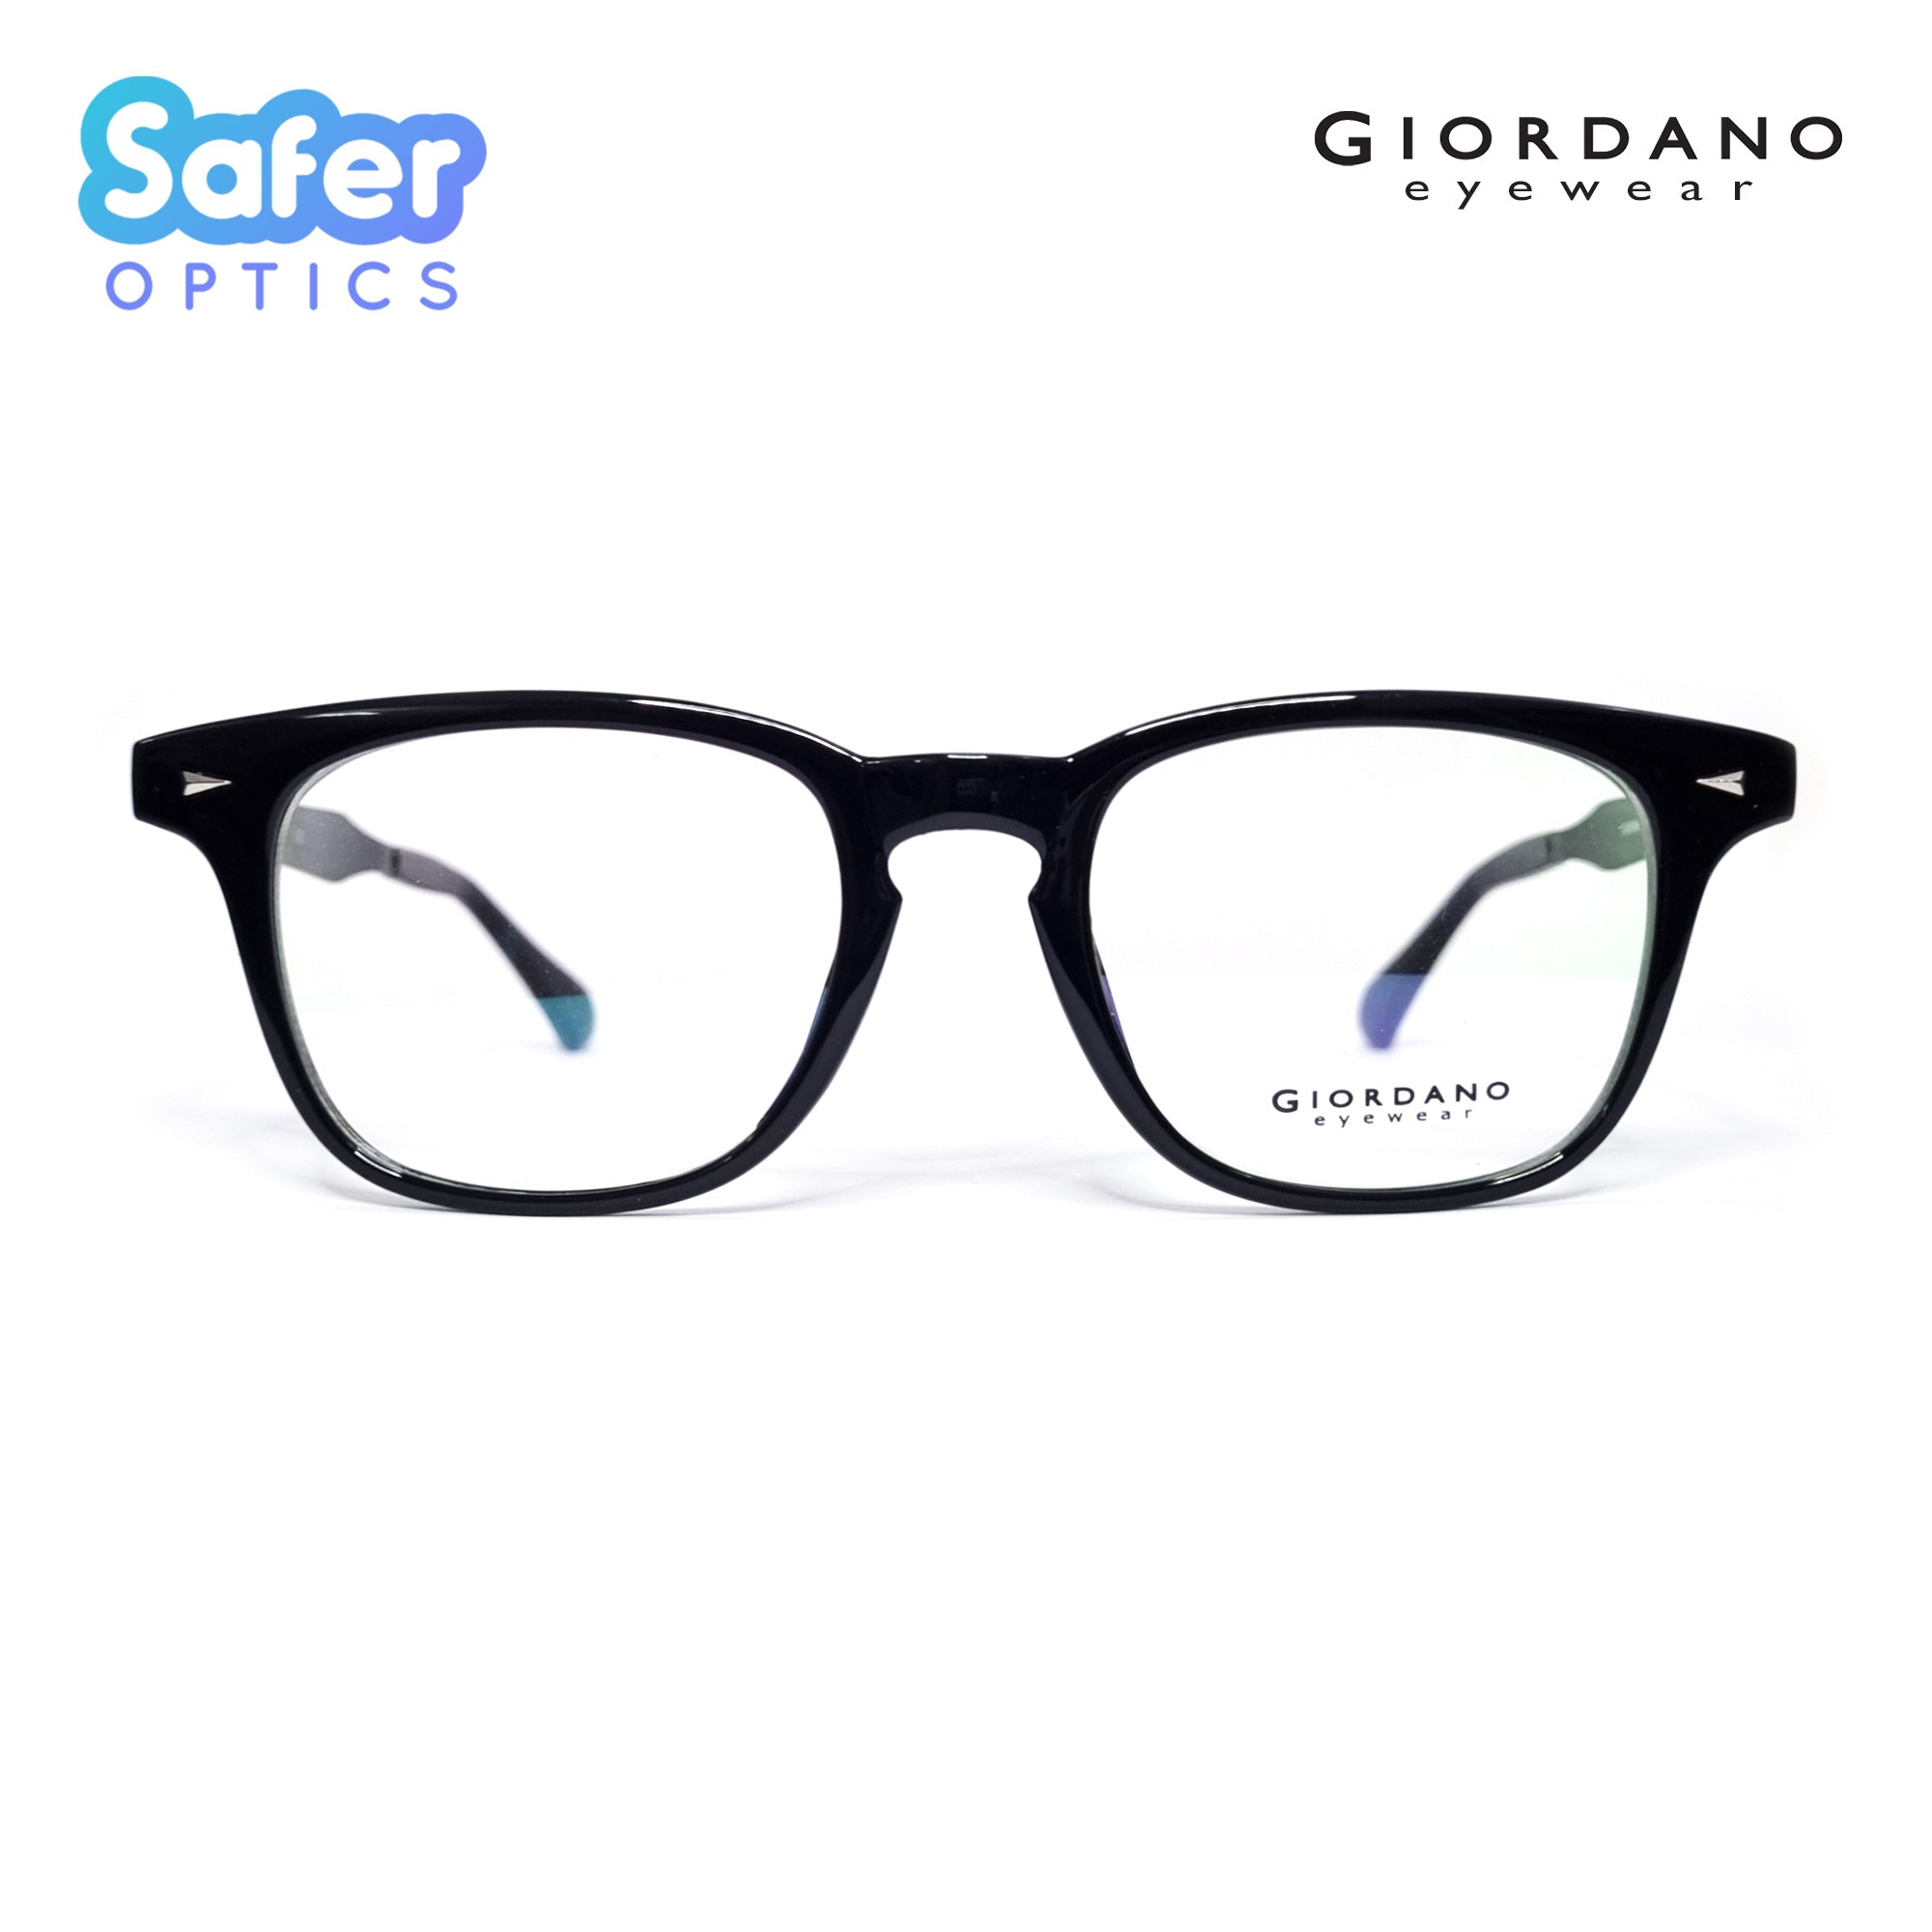 Buy GIORDANO Aviator Sunglasses Brown For Men & Women Online @ Best Prices  in India | Flipkart.com